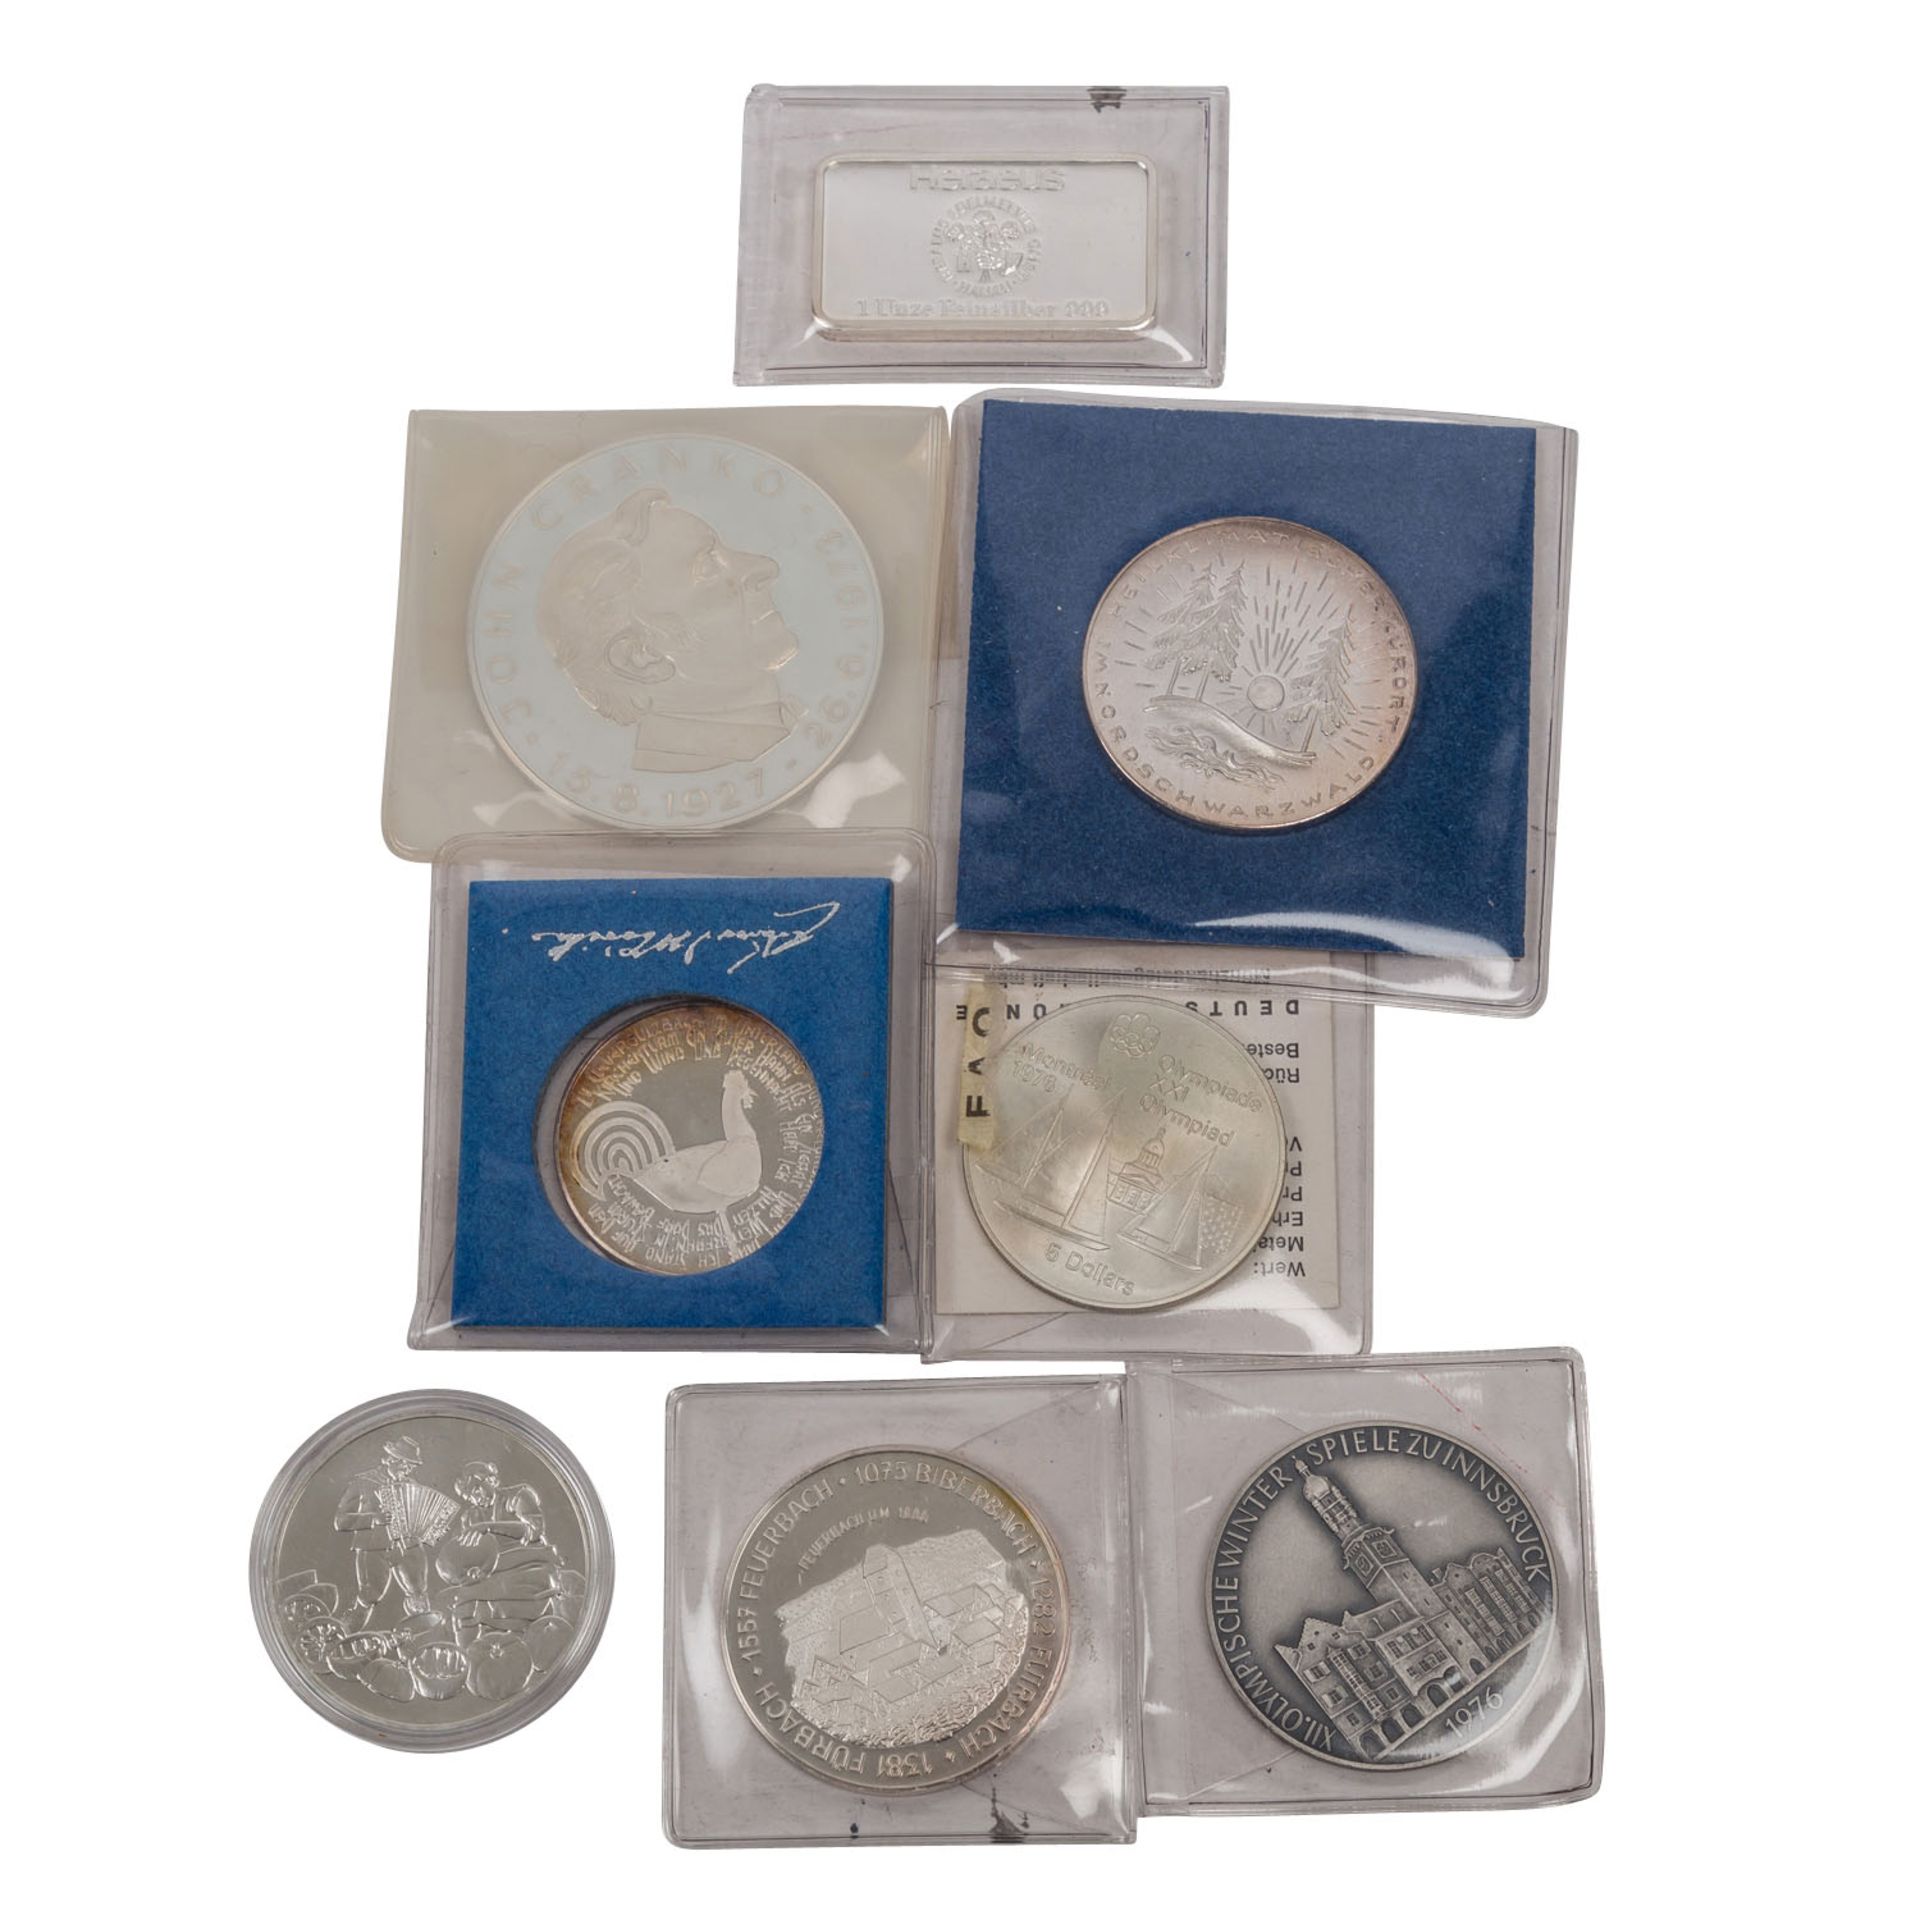 Münzen und Medaillen, - Bild 4 aus 4